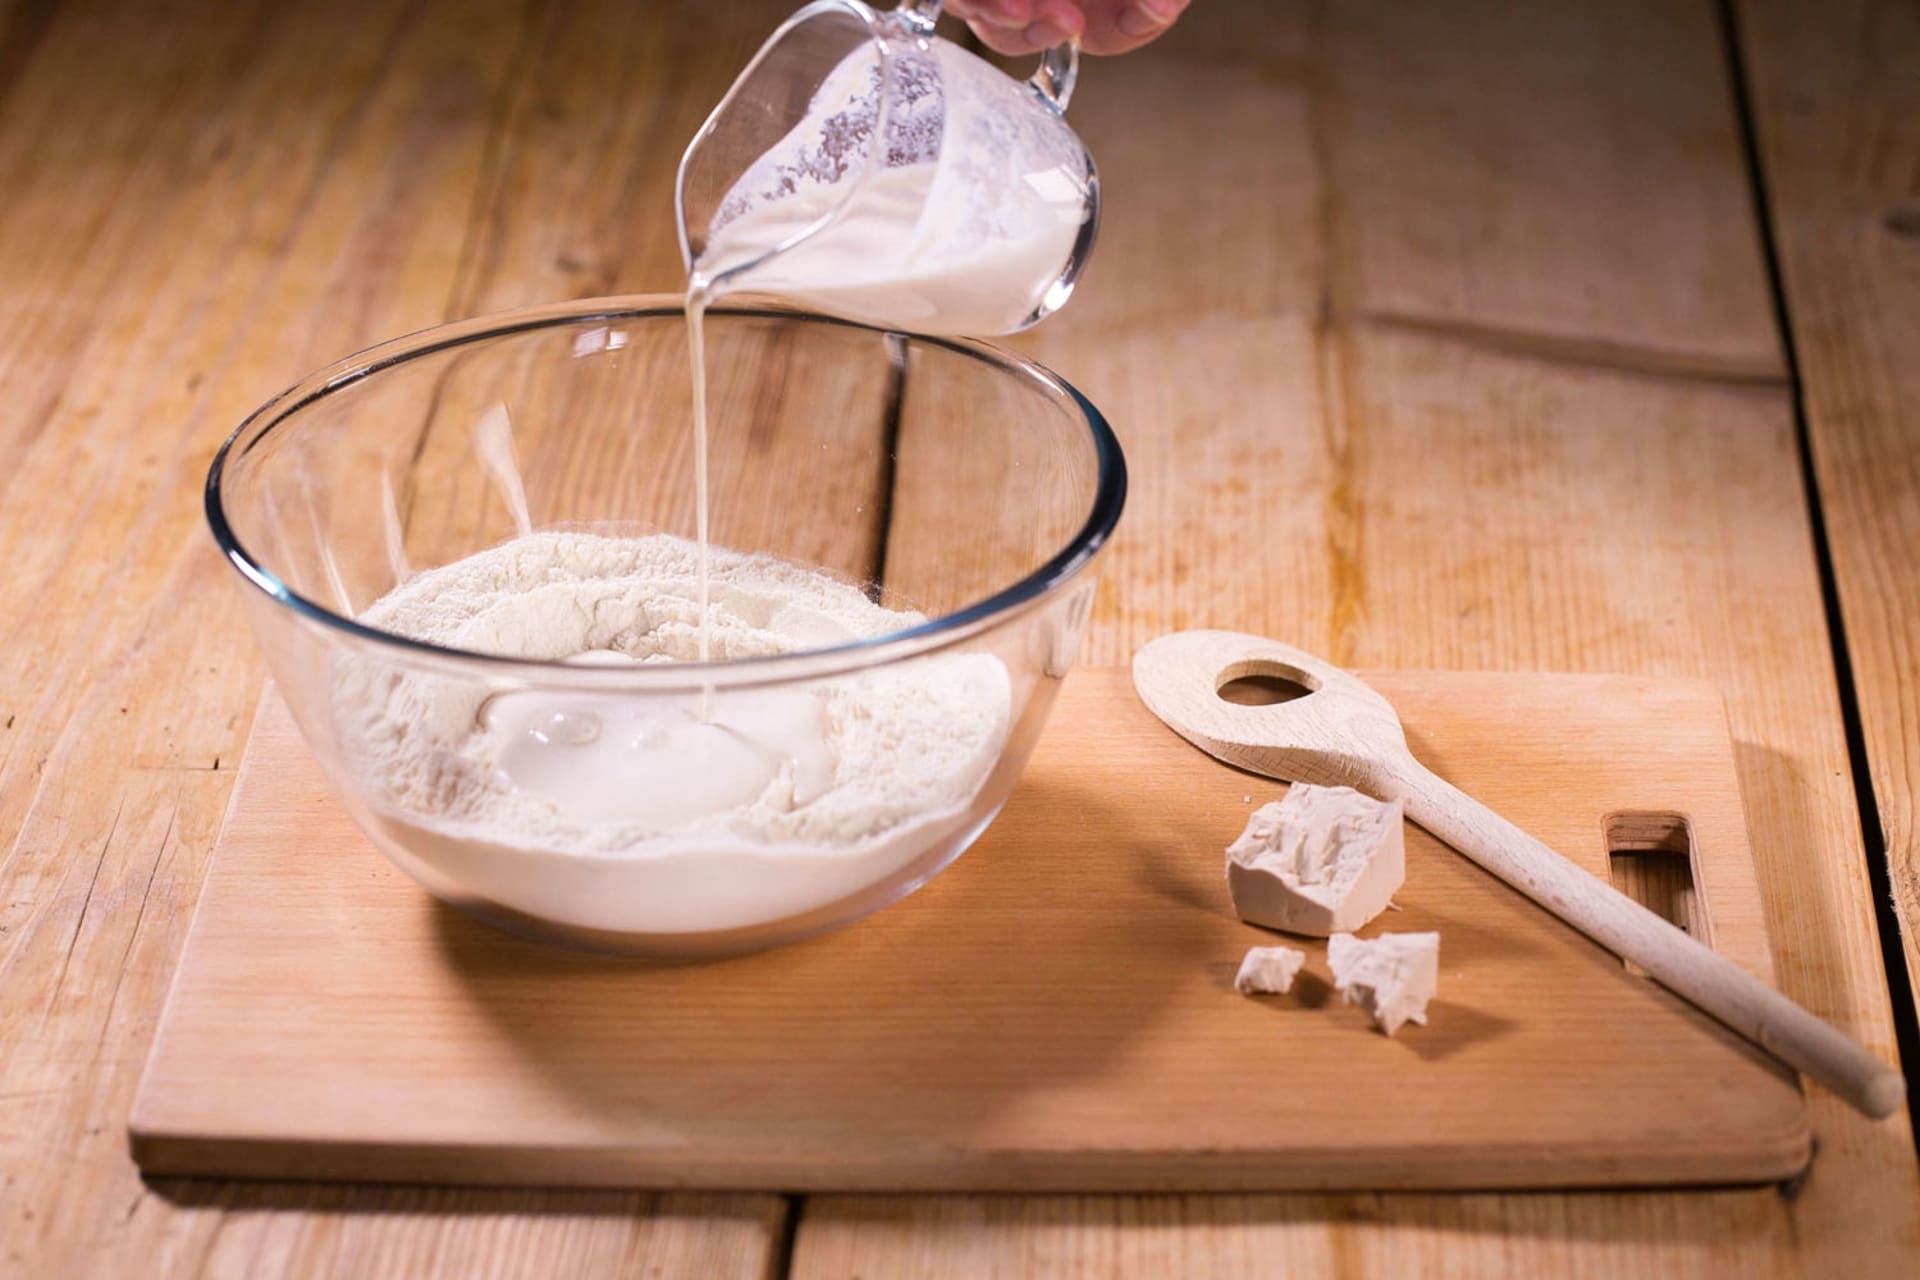 Przepis na domowe bułeczki pieczone w piekarniku: Do miski przesiać mąkę, dodać sól i zrobić wgłębienie.  Wlać do niego drożdże zakwasowe i zacząć je dodawać do mąki. 